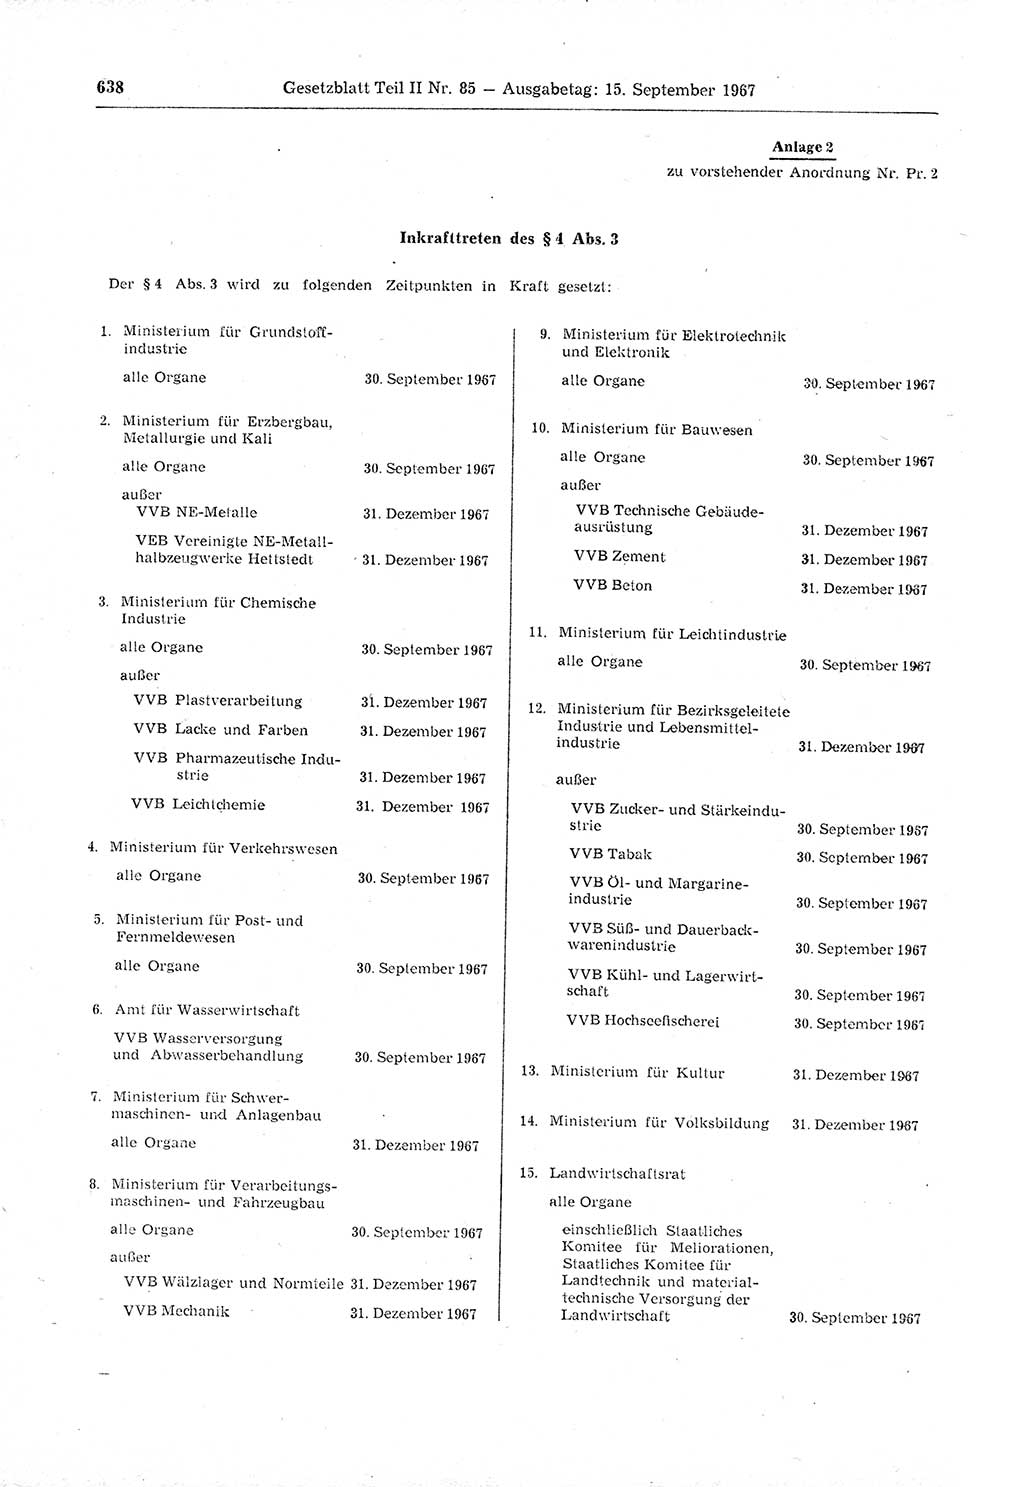 Gesetzblatt (GBl.) der Deutschen Demokratischen Republik (DDR) Teil ⅠⅠ 1967, Seite 638 (GBl. DDR ⅠⅠ 1967, S. 638)